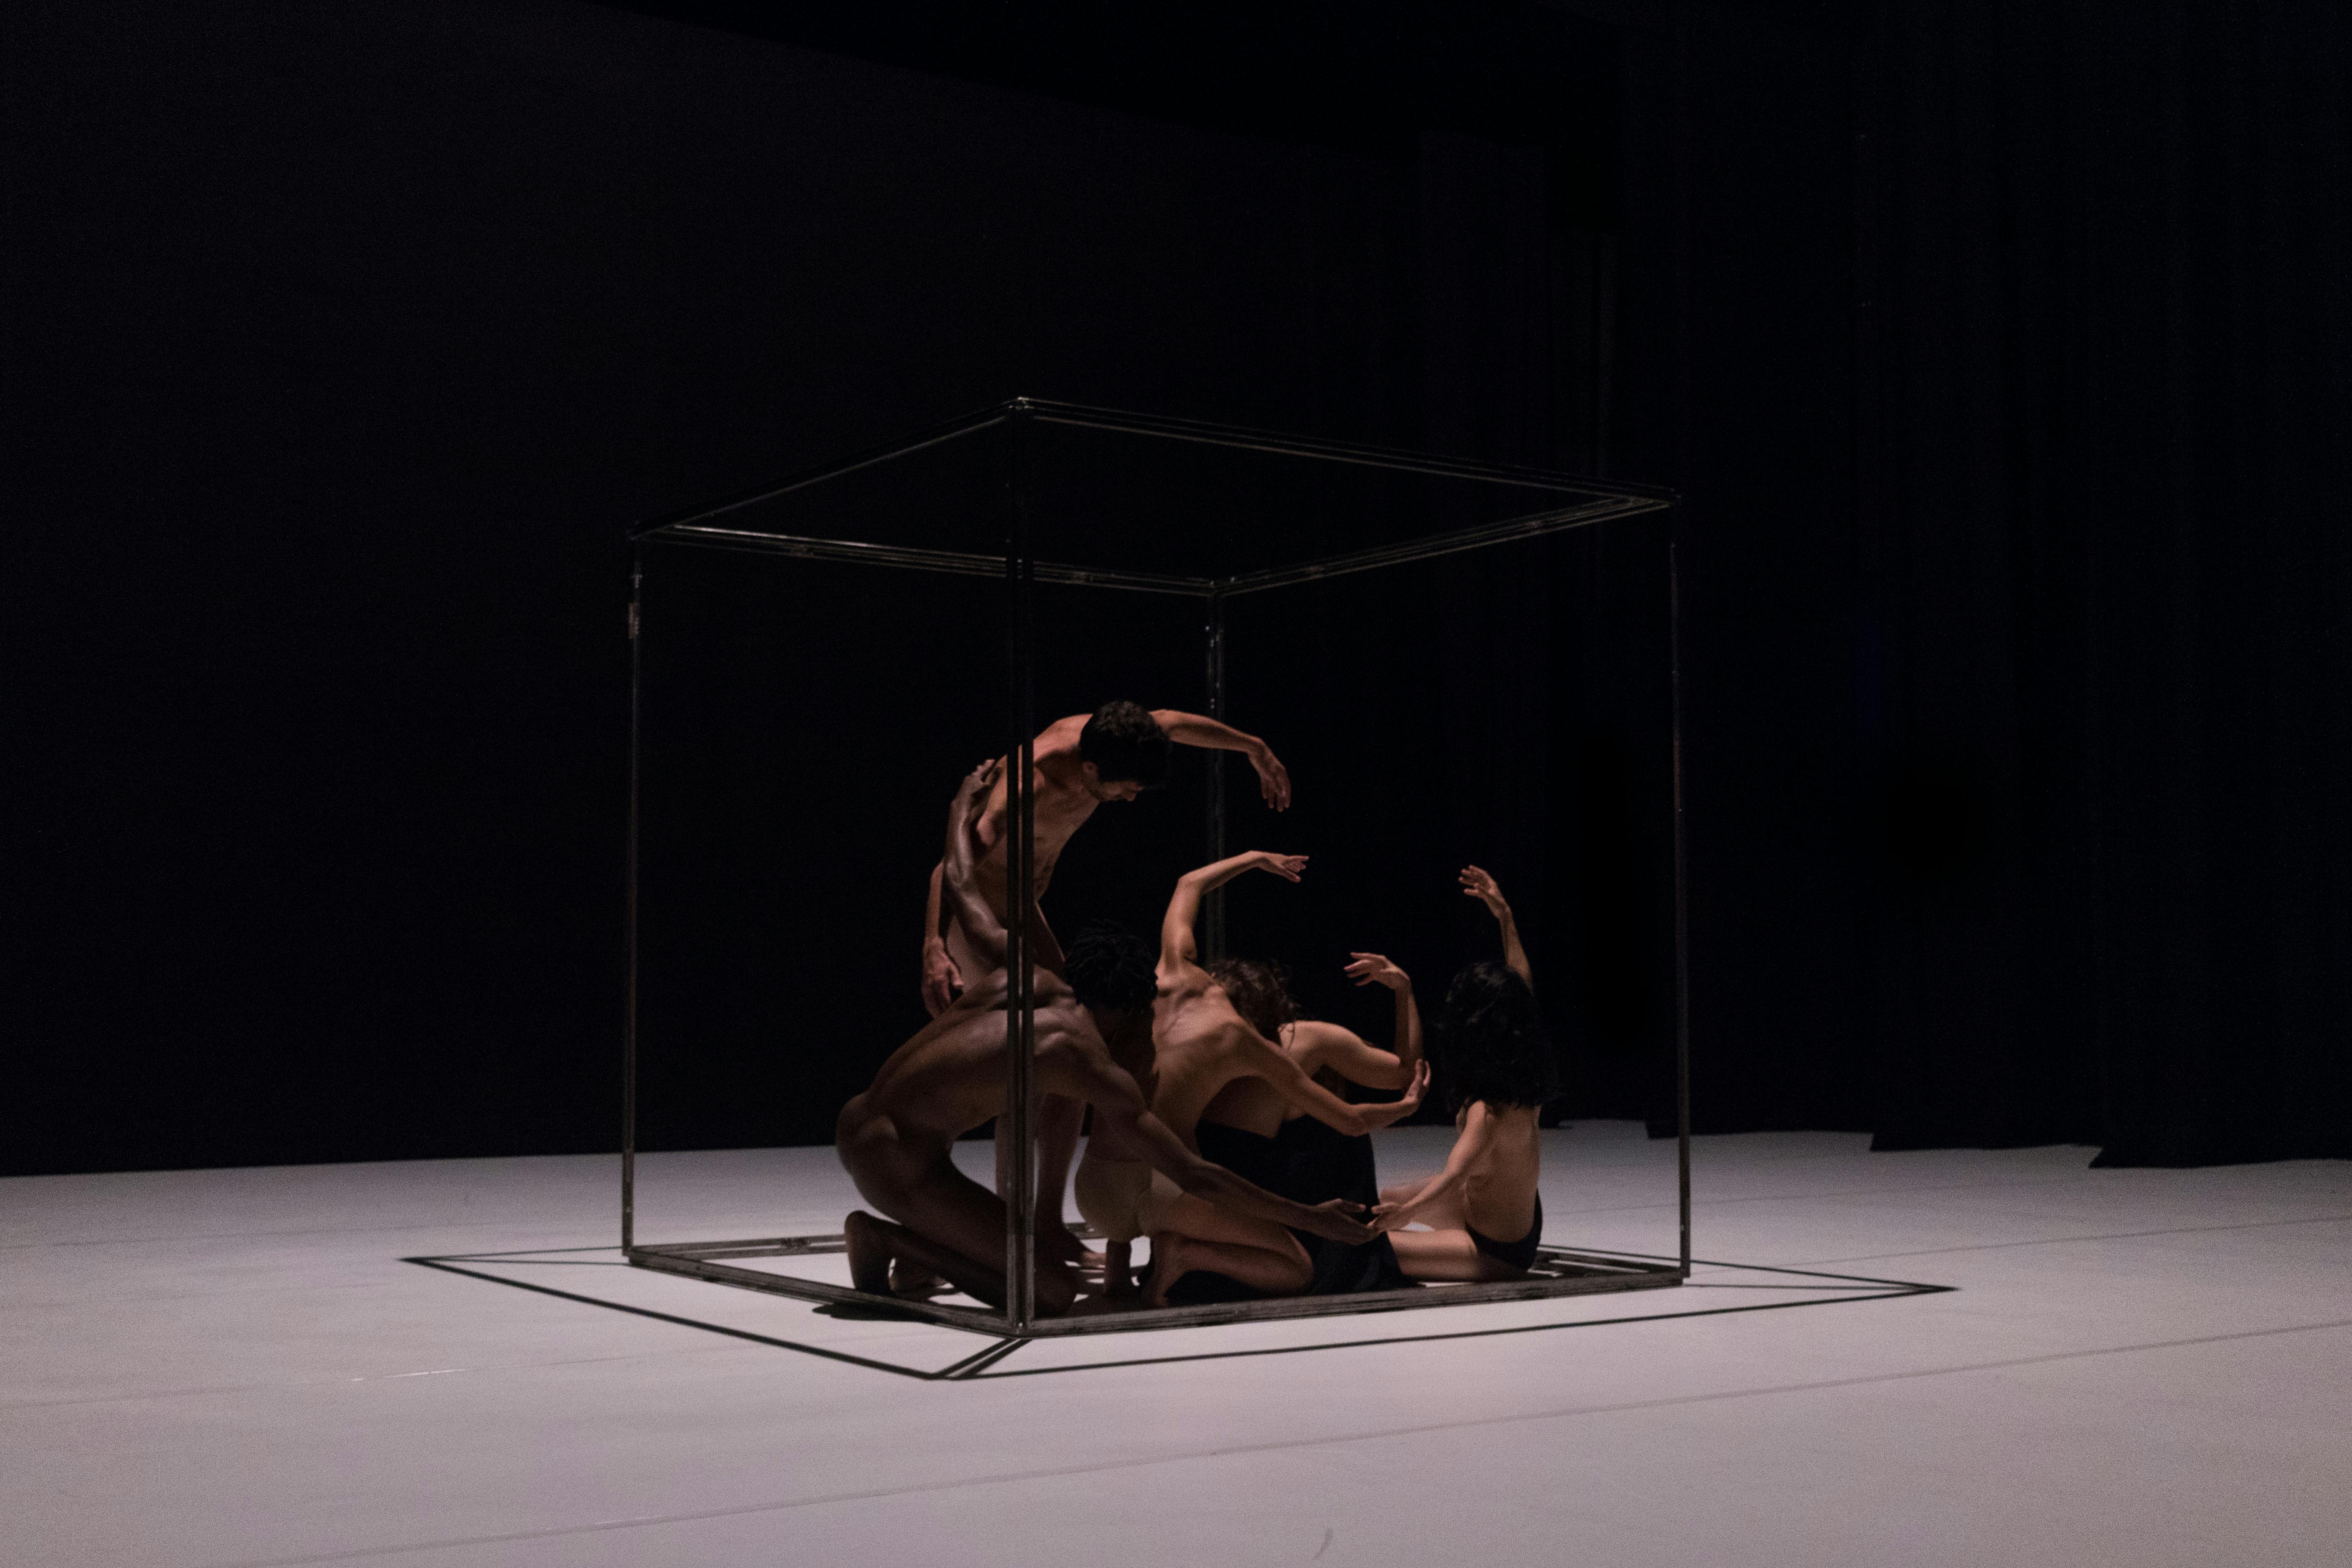 Al centro del paloscenico c'è una struttura cubica in metallo. Al suo interno si muovono danzatori e danzatrici. I loro corpi sono nudi.